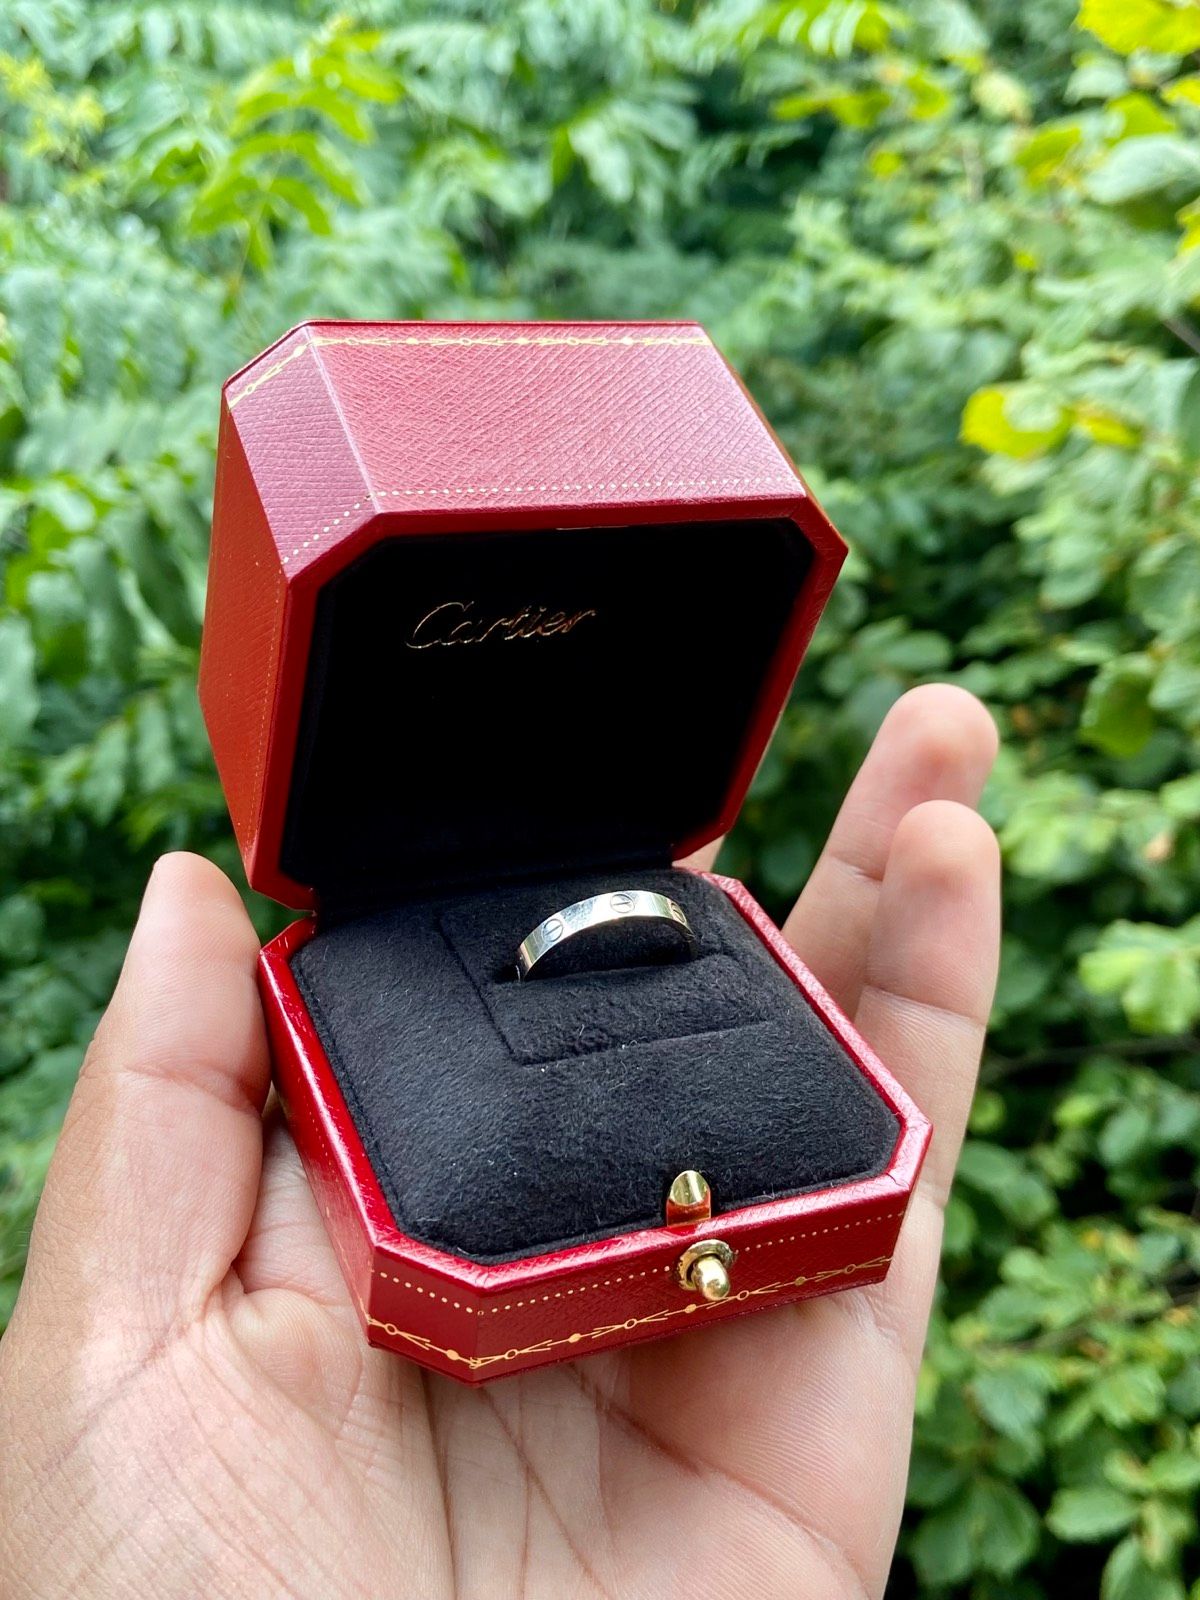 Cartier Love Ring White Gold Size 50 Full Set